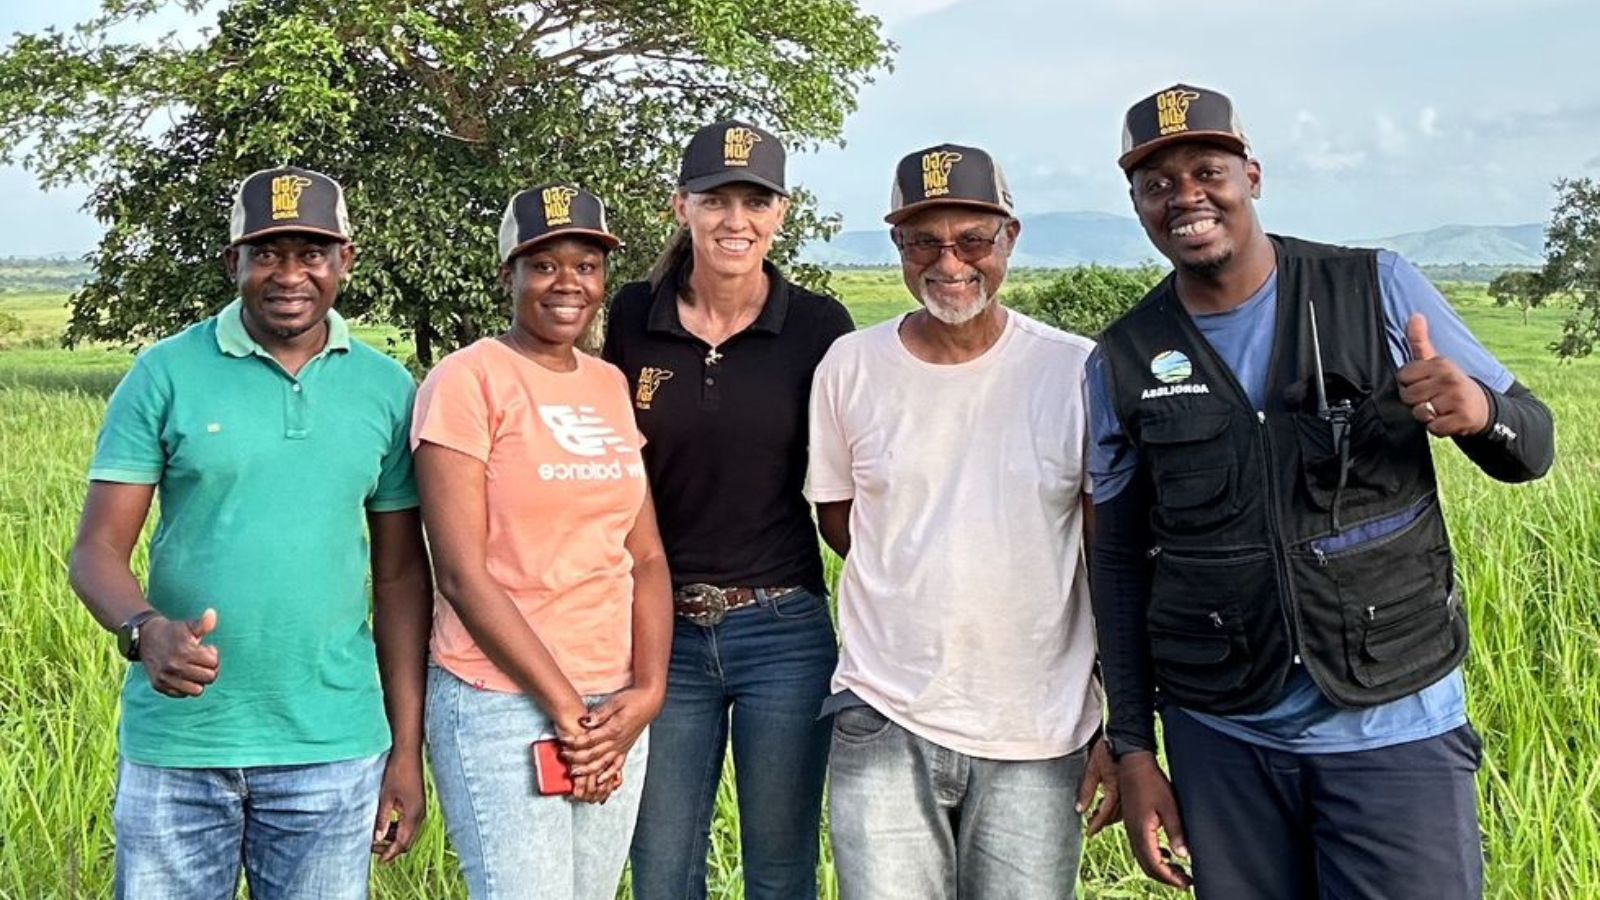 Pecuária na África: zootecnista conta sua 1ª experiência ajudando produtores familiares em Angola